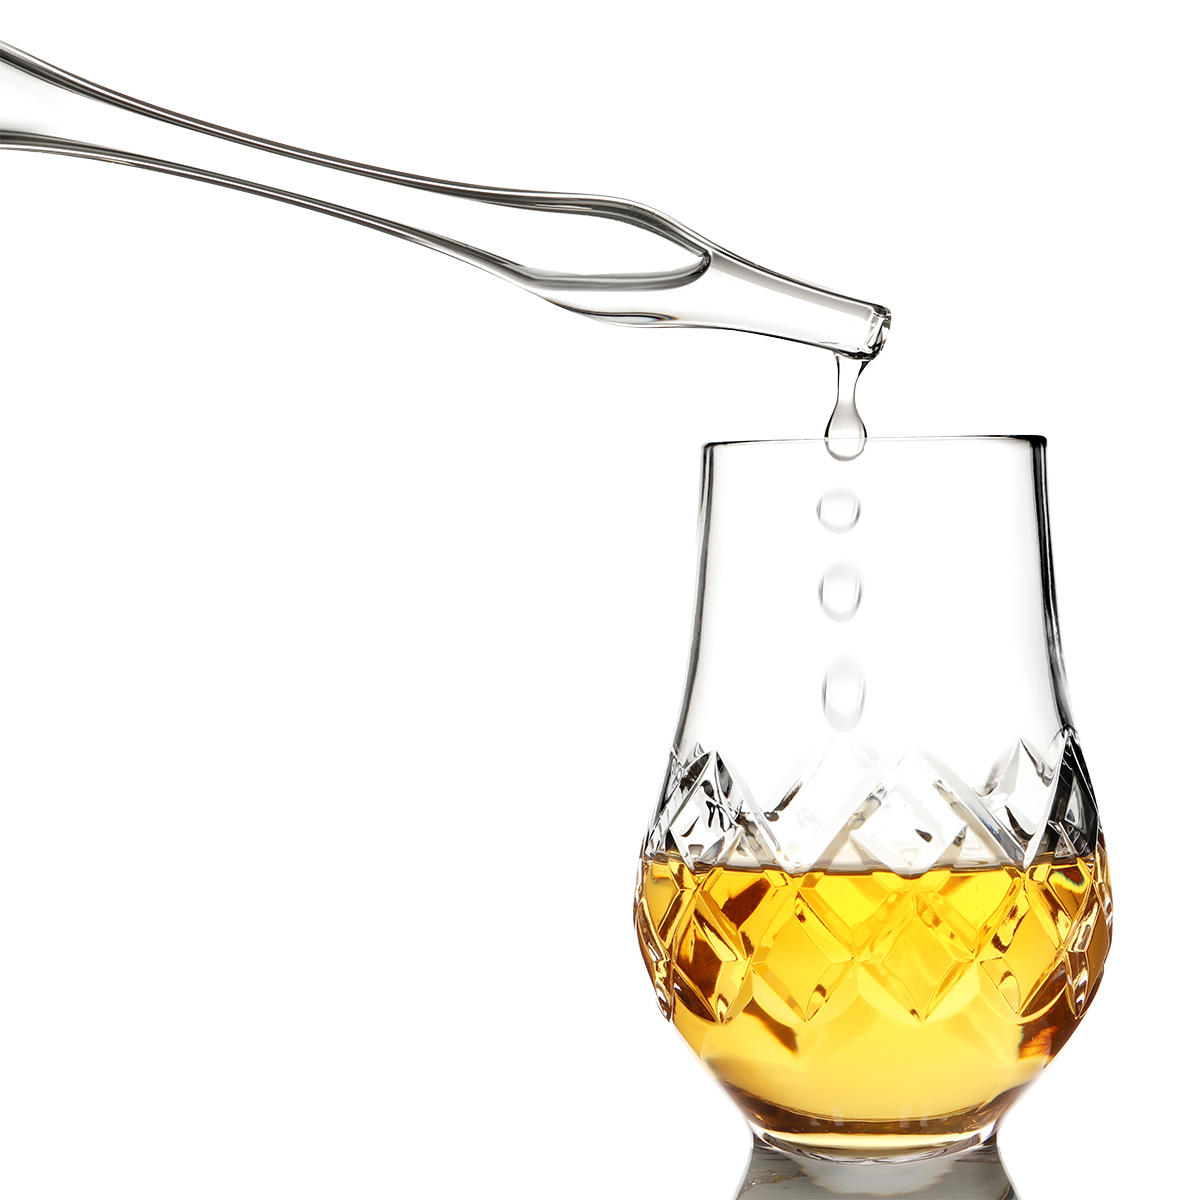 Whisky Wasser Pipette / Dropper aus Glas - Pot Still / Brennblase - Handgefertigt in Schottland